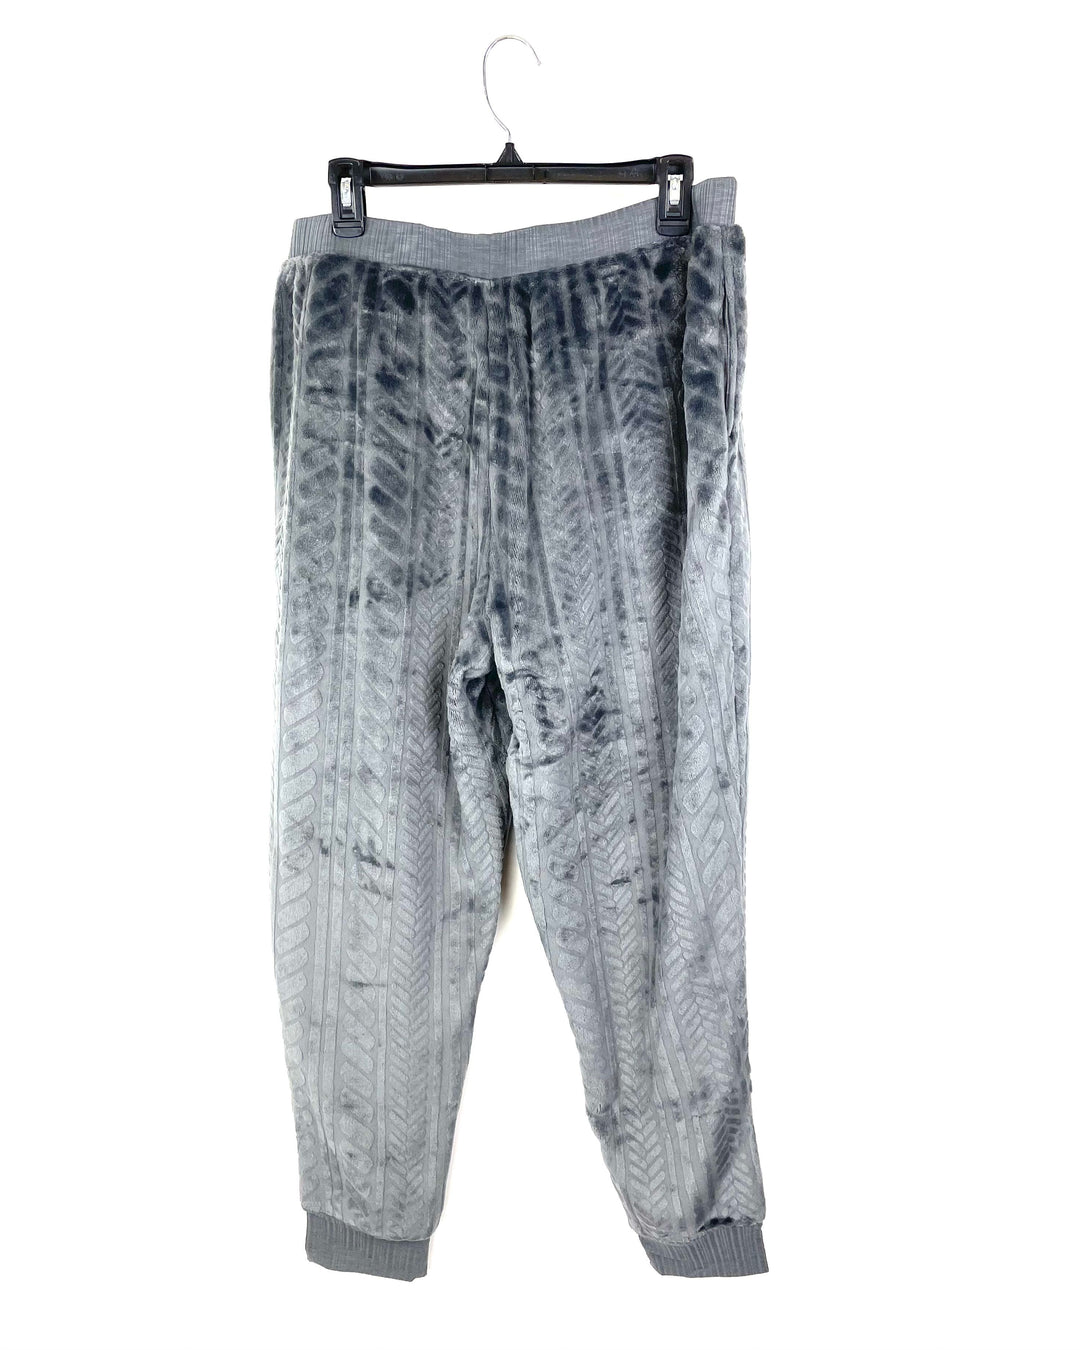 Grey Fleece Pants - Size 14/16